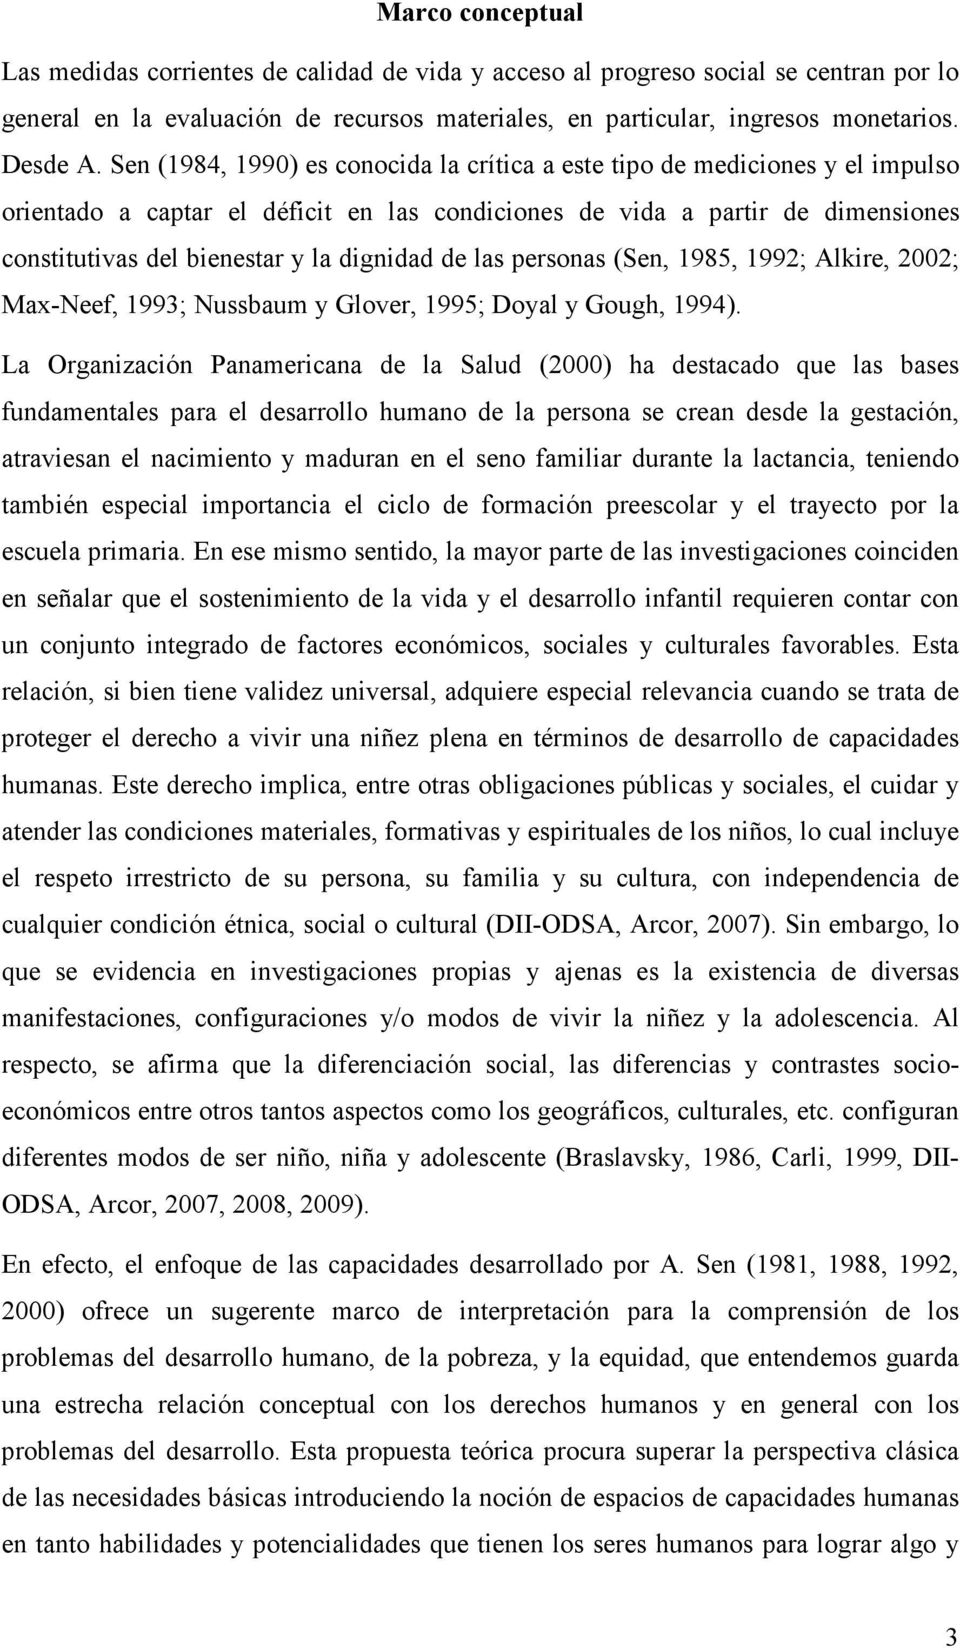 dignidad de las personas (Sen, 1985, 1992; Alkire, 2002; Max-Neef, 1993; Nussbaum y Glover, 1995; Doyal y Gough, 1994).